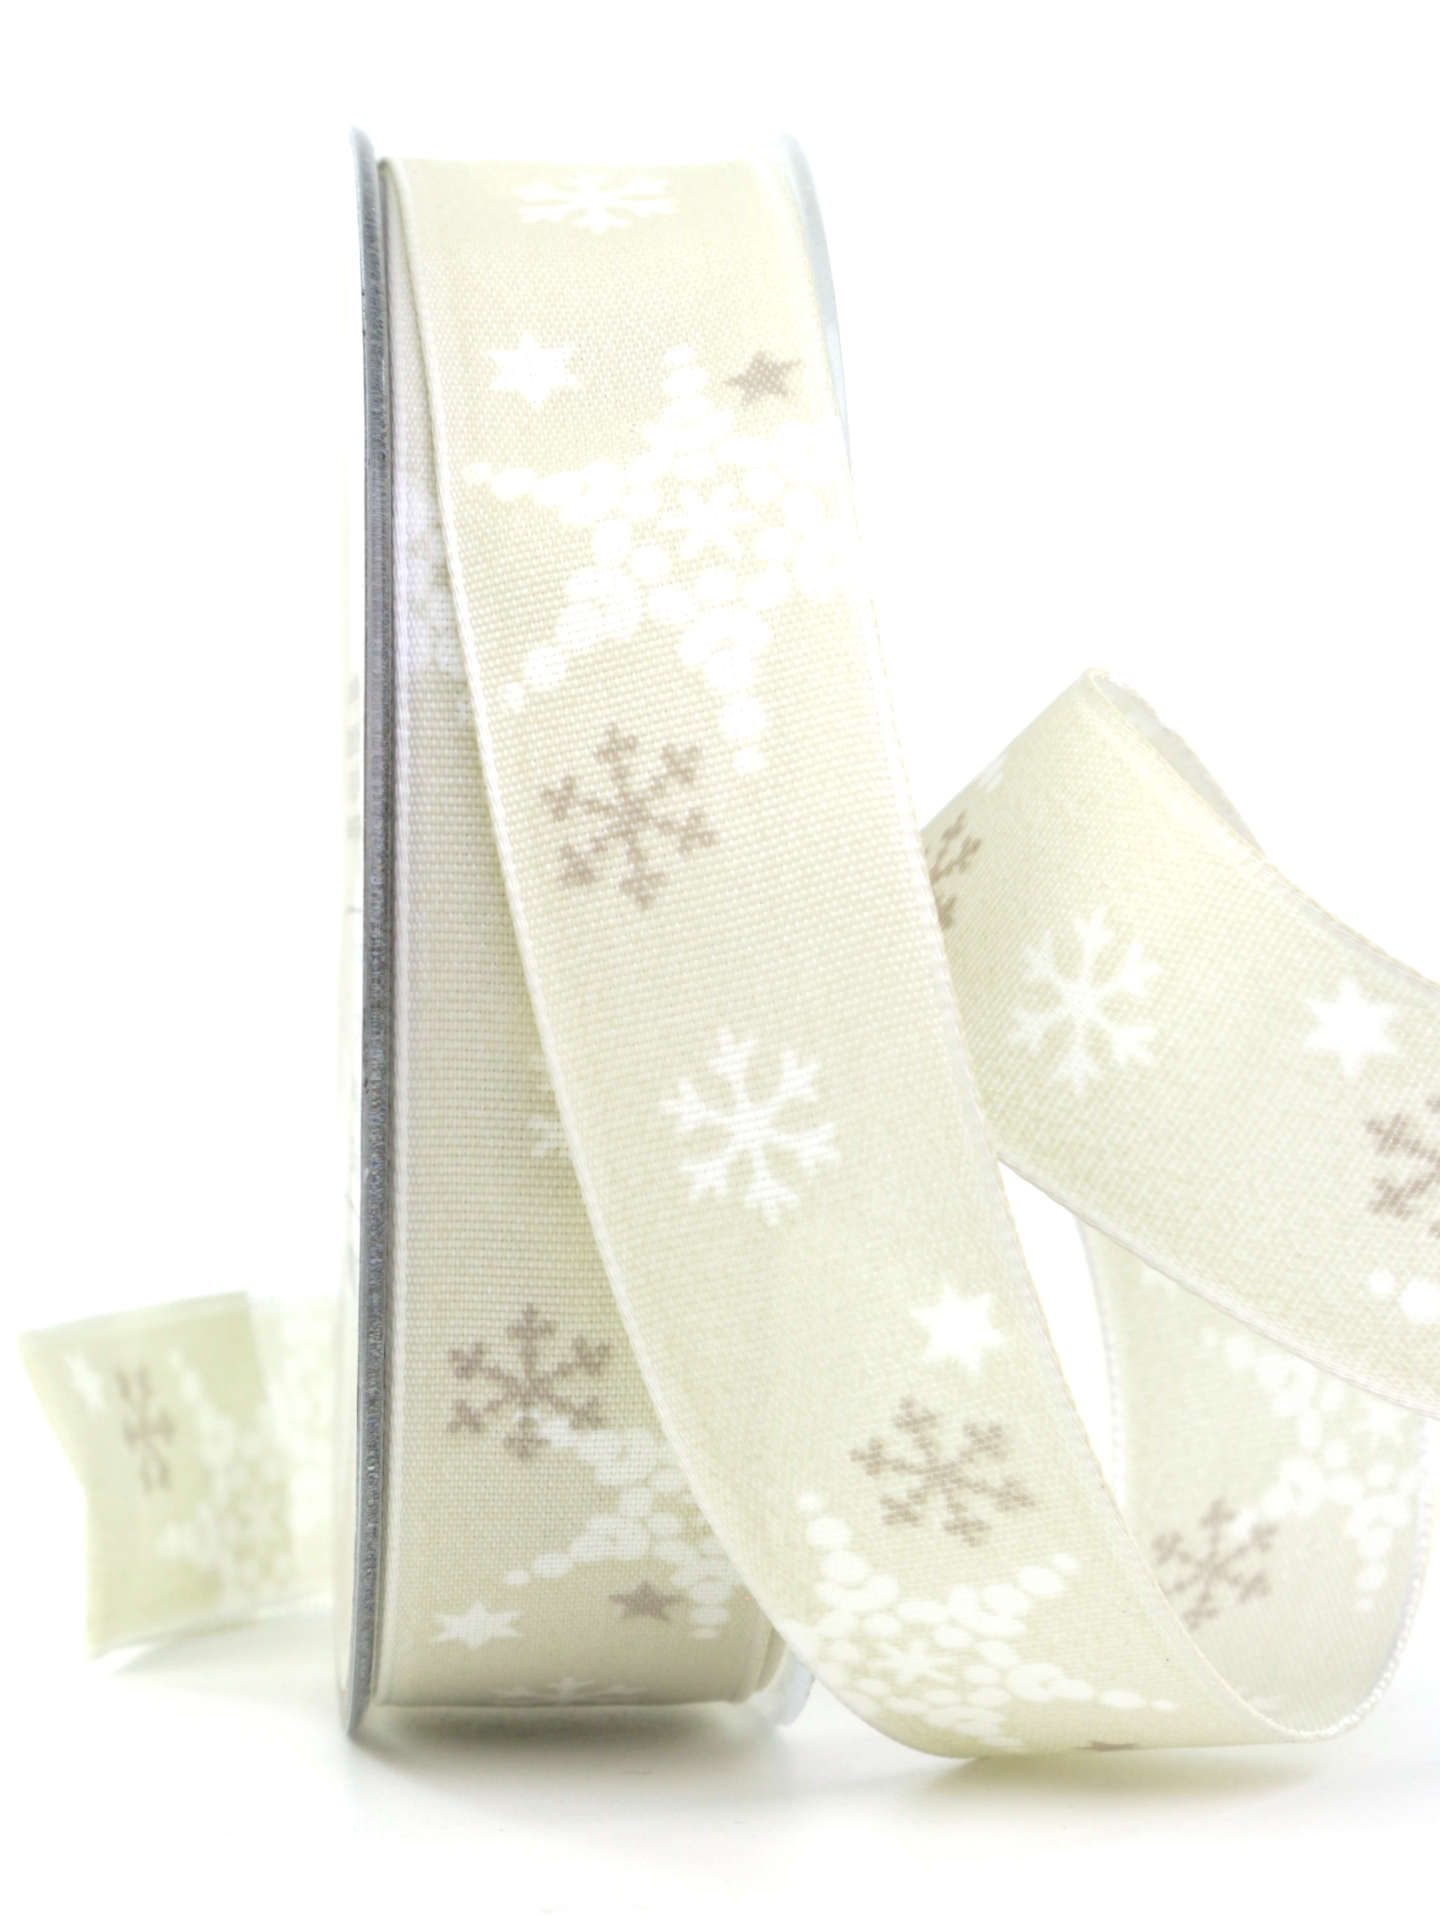 Dekoband mit Schneeflocken, sand, 25 mm breit - geschenkband-weihnachten-gemustert, geschenkband-weihnachten, weihnachtsband